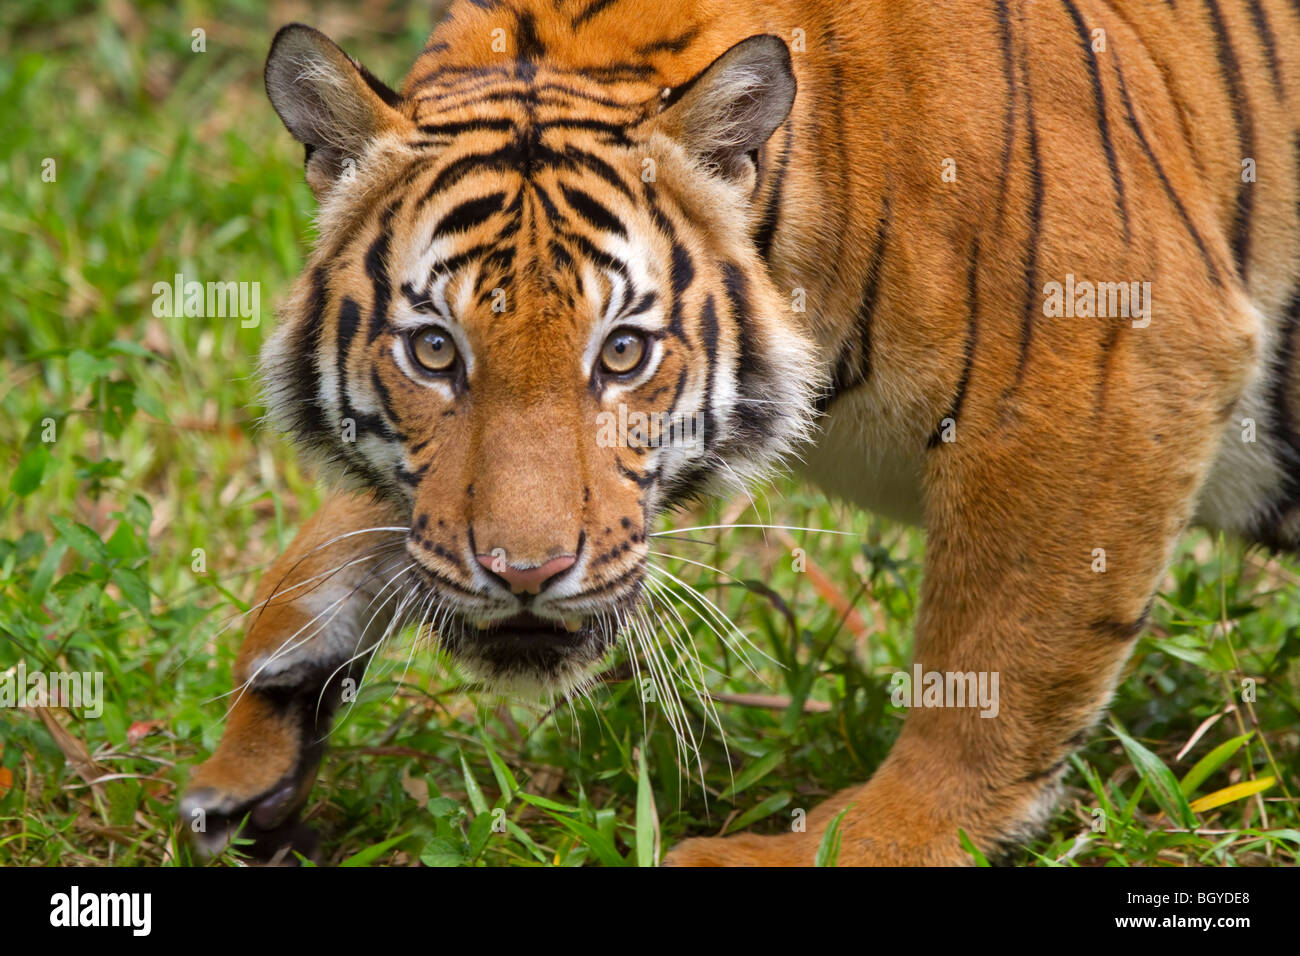 Sumatran tiger (Panthera tigris sumatrae). Stock Photo